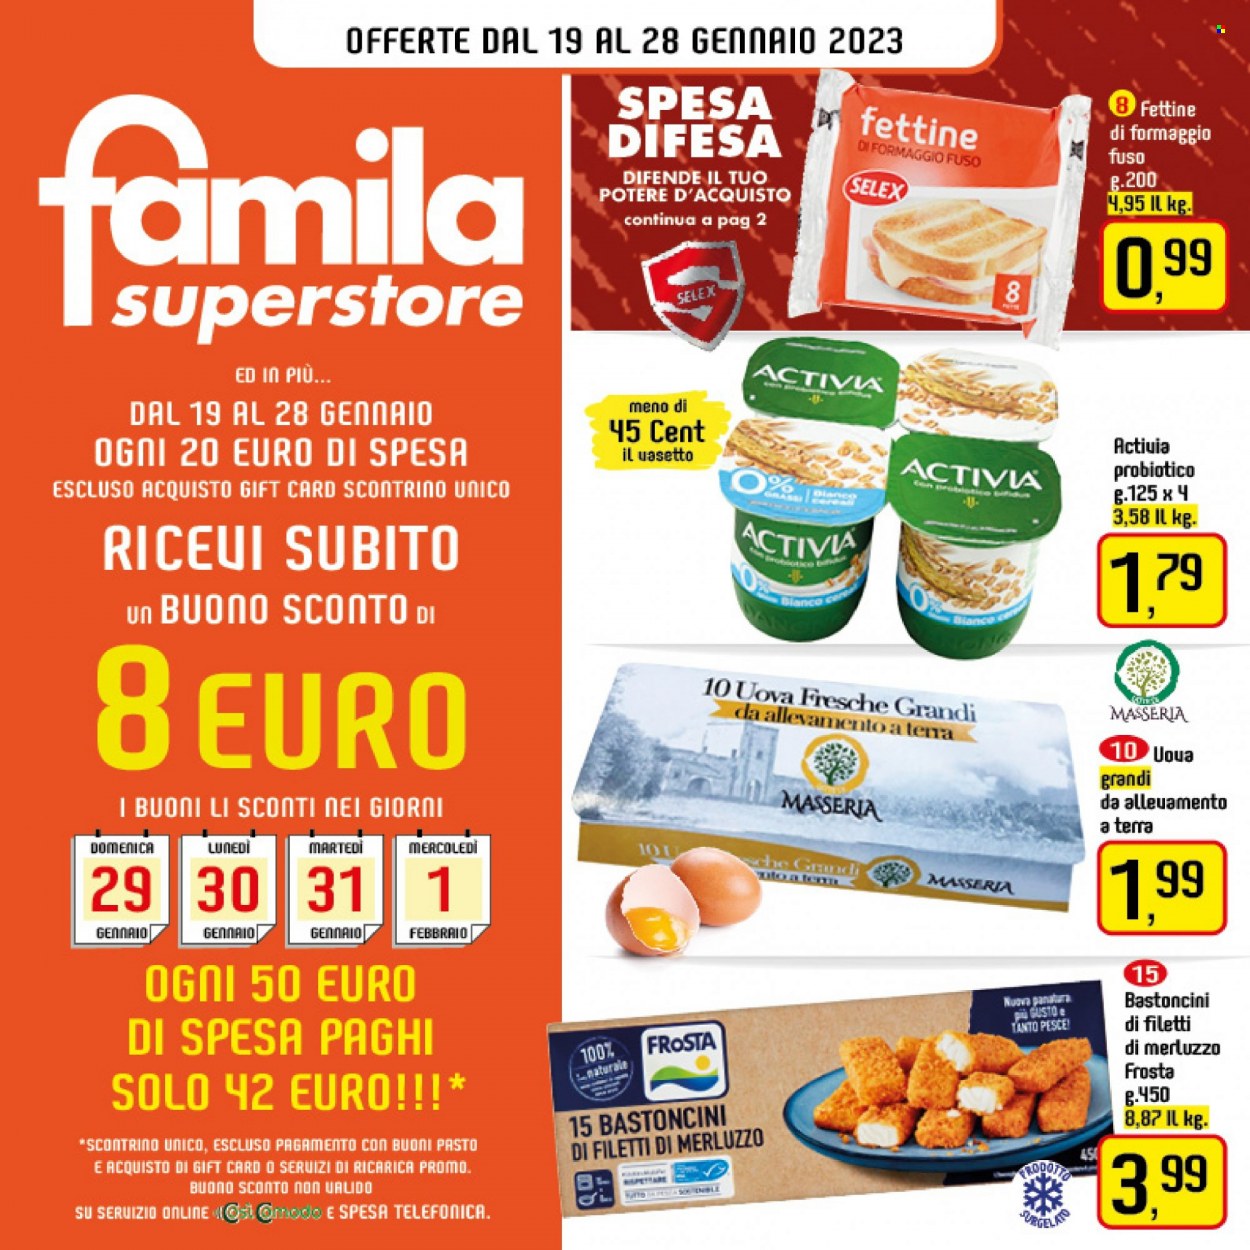 Volantino Famila - 19/1/2023 - 28/1/2023 - Prodotti in offerta - filetti di merluzzo, pesce, merluzzo, Frosta, bastoncini, Activia, uova, bastoncini di pesce. Pagina 1.